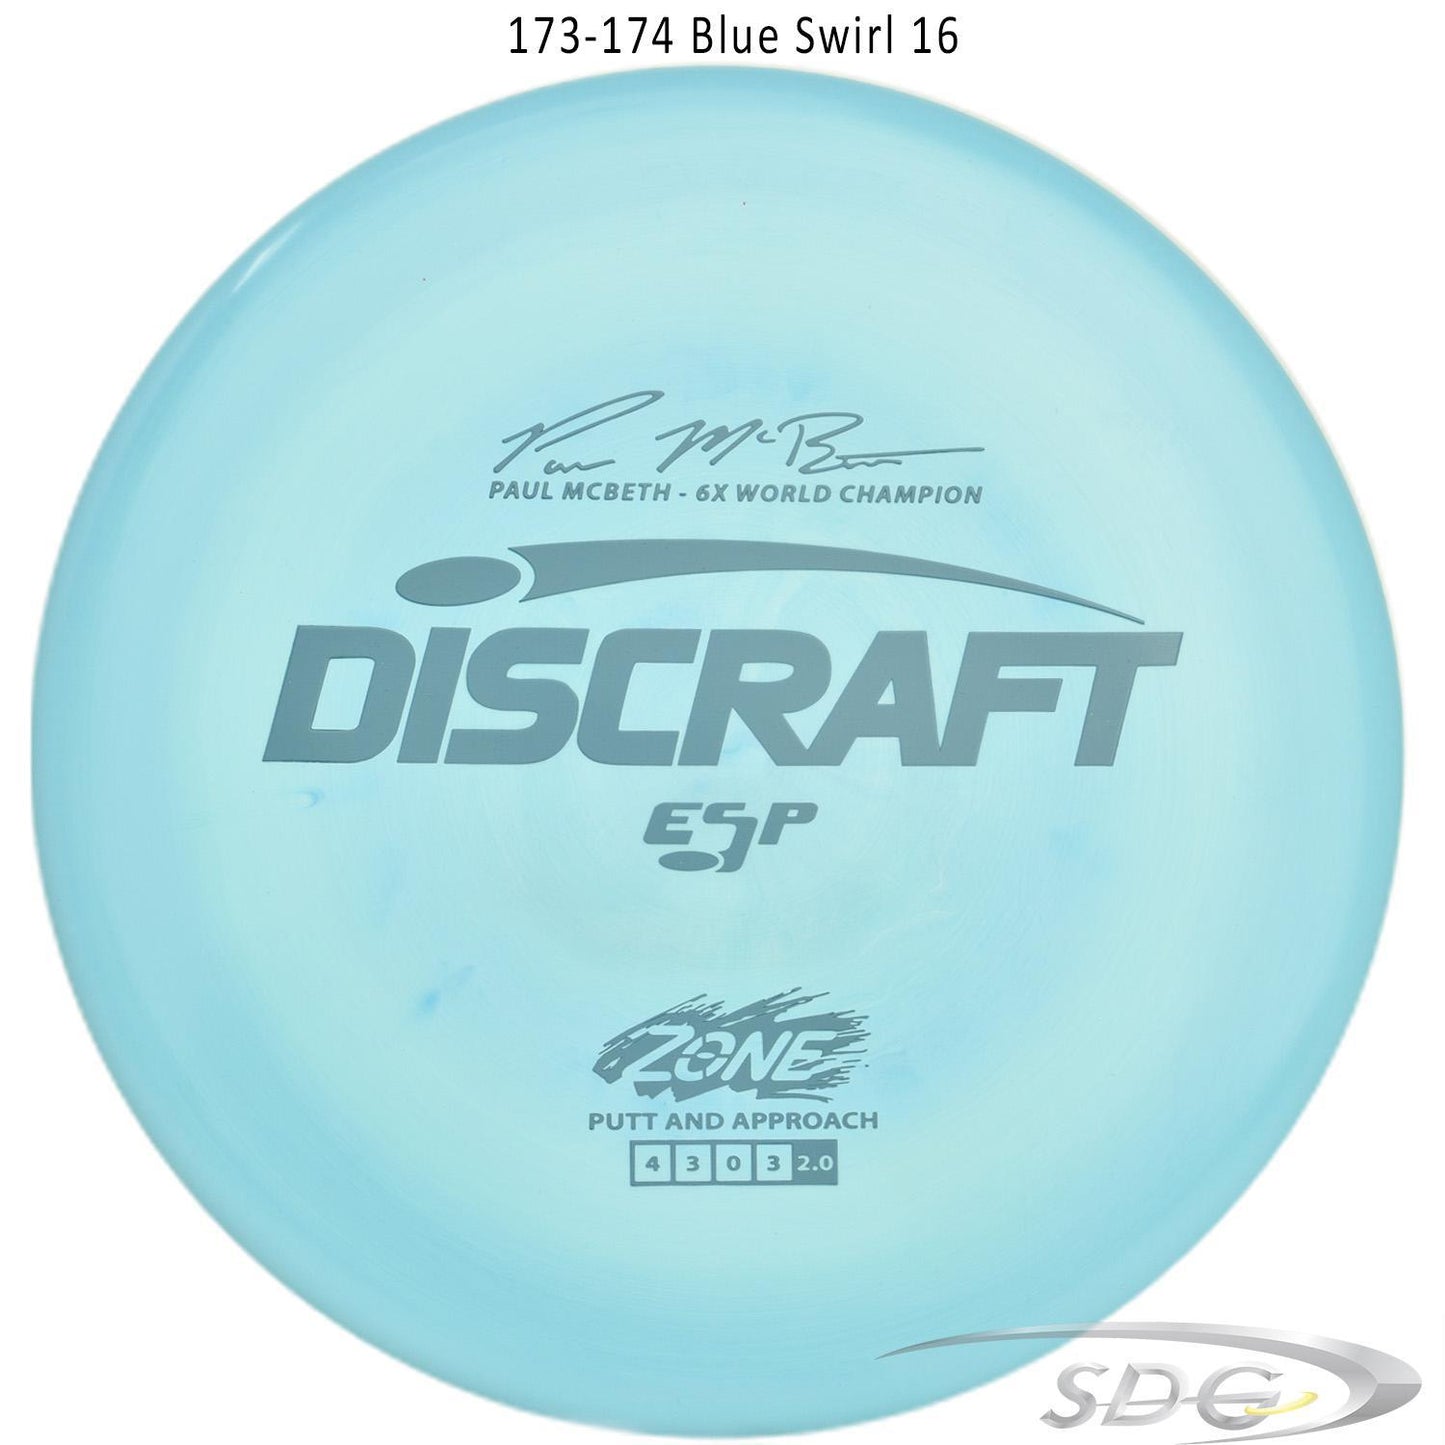 discraft-esp-zone-6x-paul-mcbeth-signature-series-disc-golf-putter 173-174 Blue Swirl 16